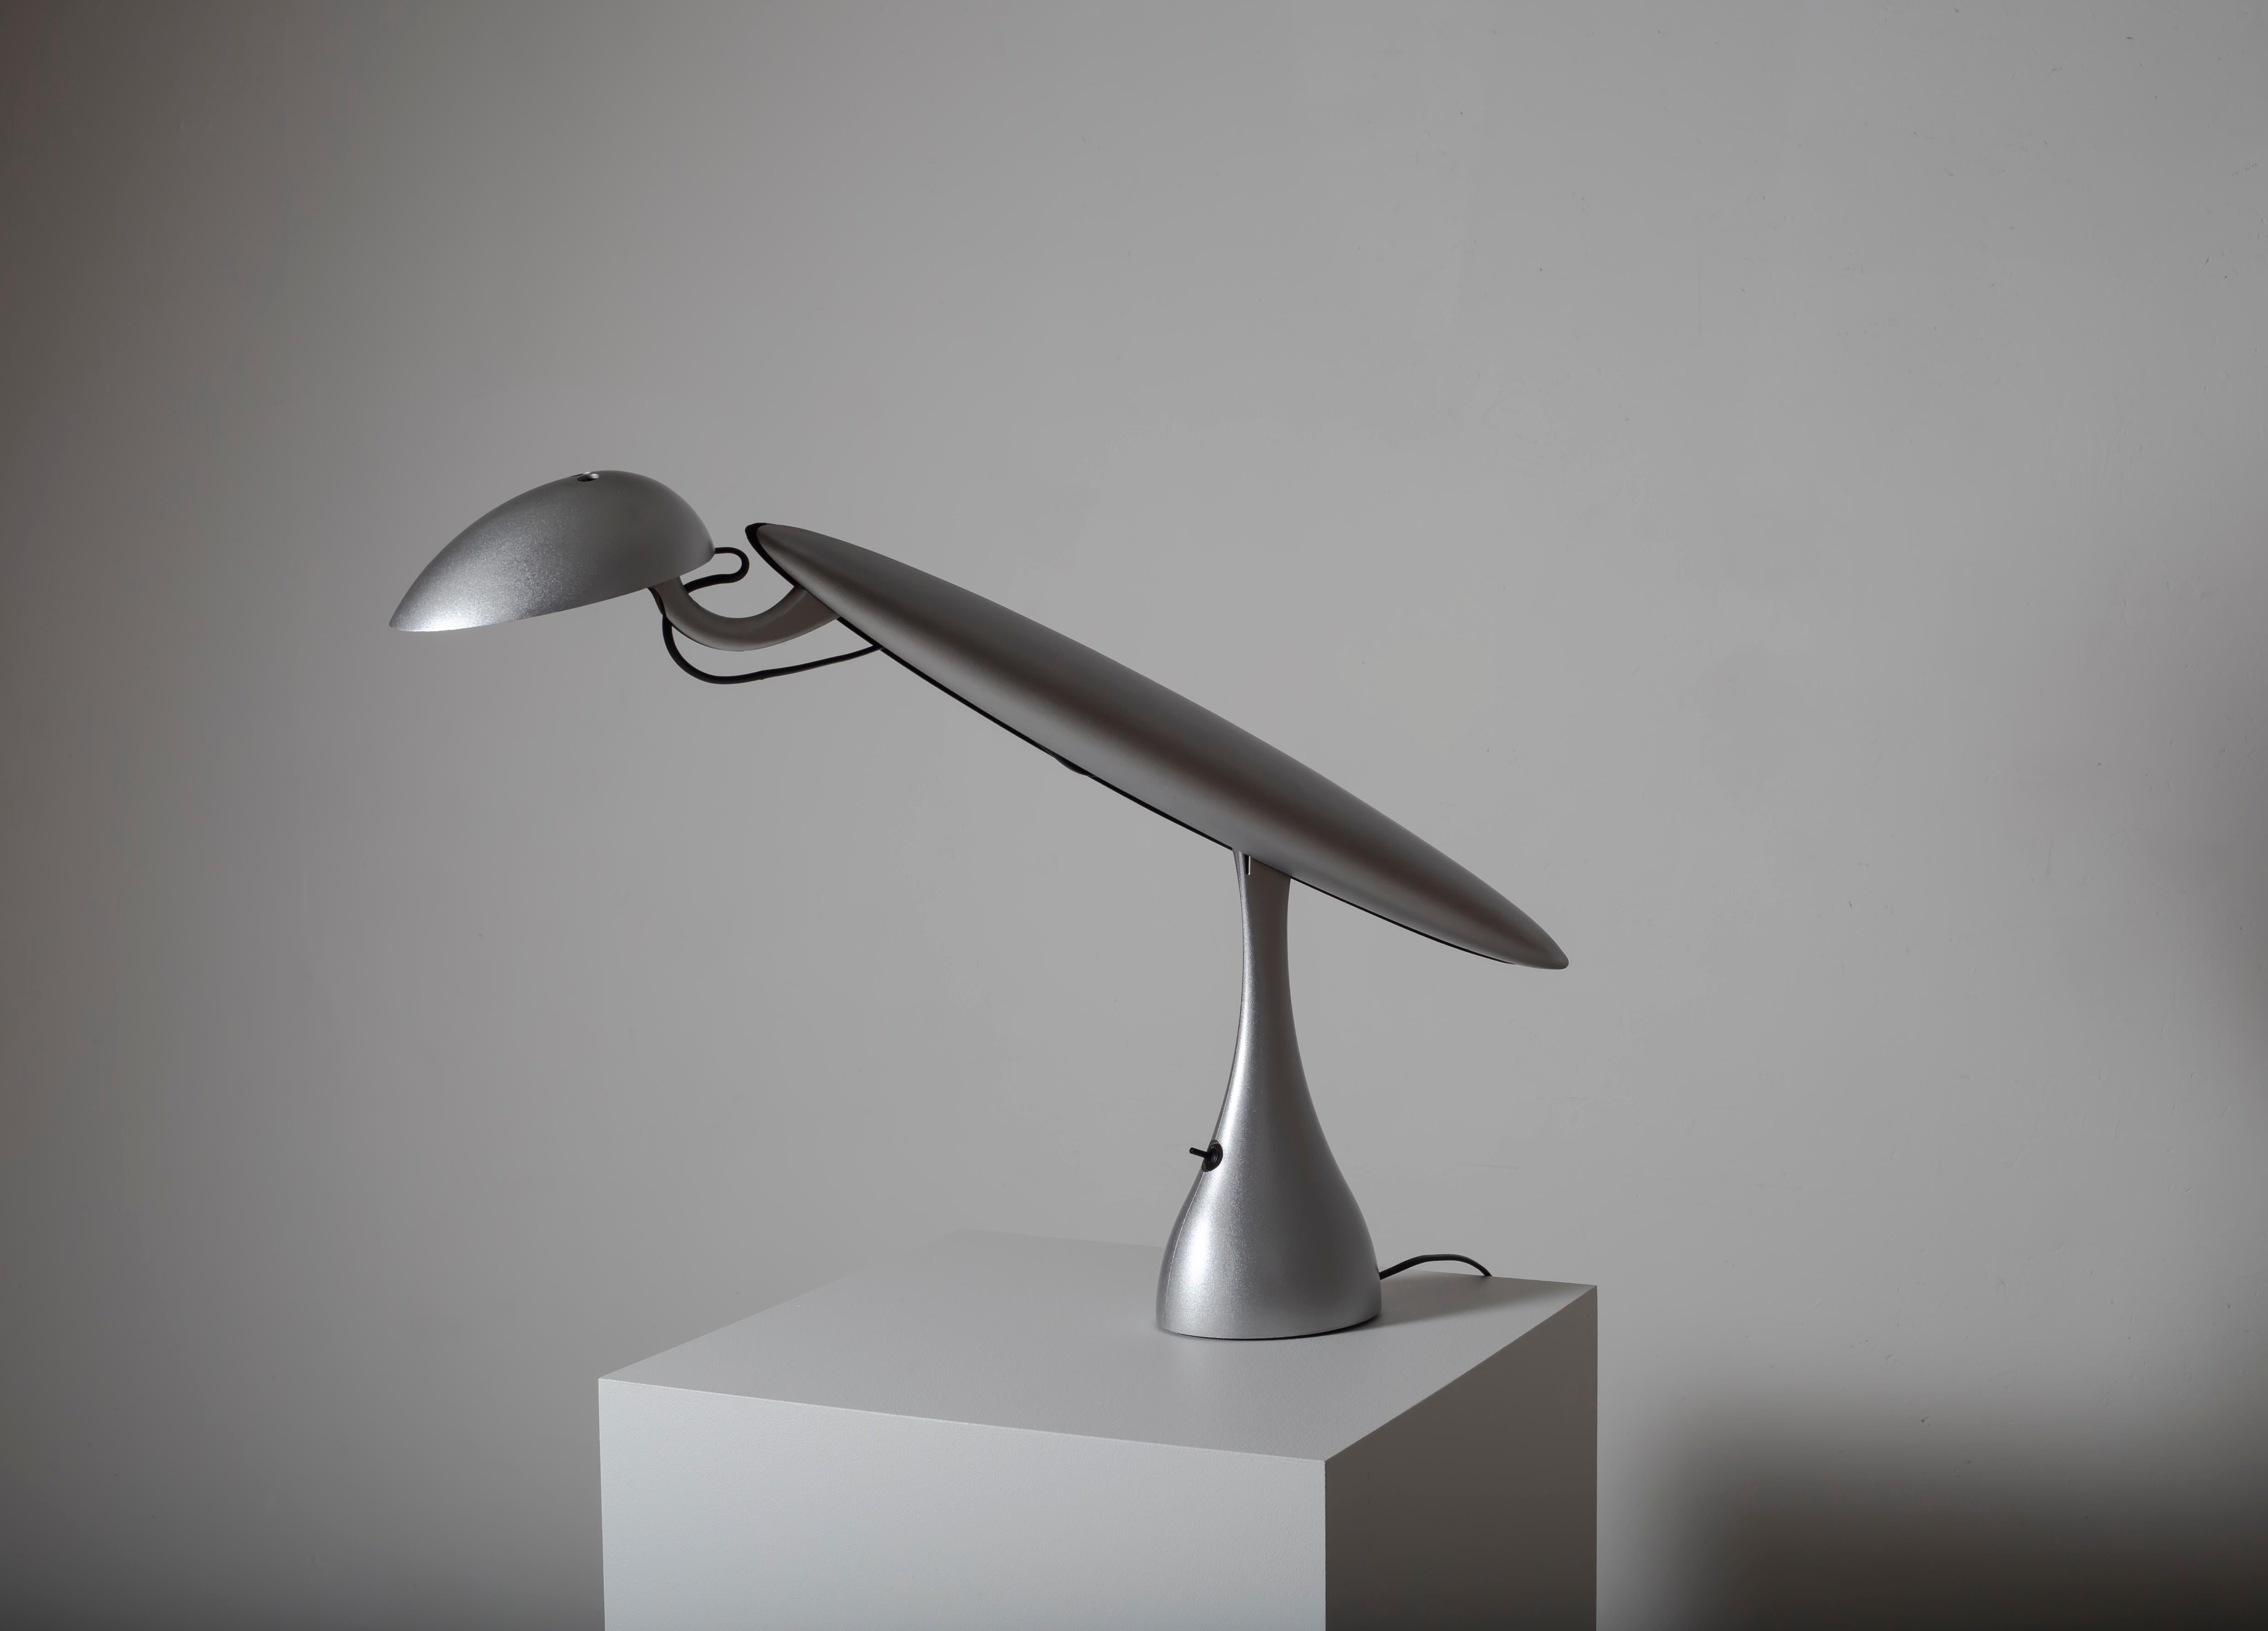 Lampe de table emblématique conçue par Isao Icone pour le fabricant de lampes norvégien Luxo. Plastique moulé dans un revêtement argenté laqué. La lampe fonctionne parfaitement et est en bon état.